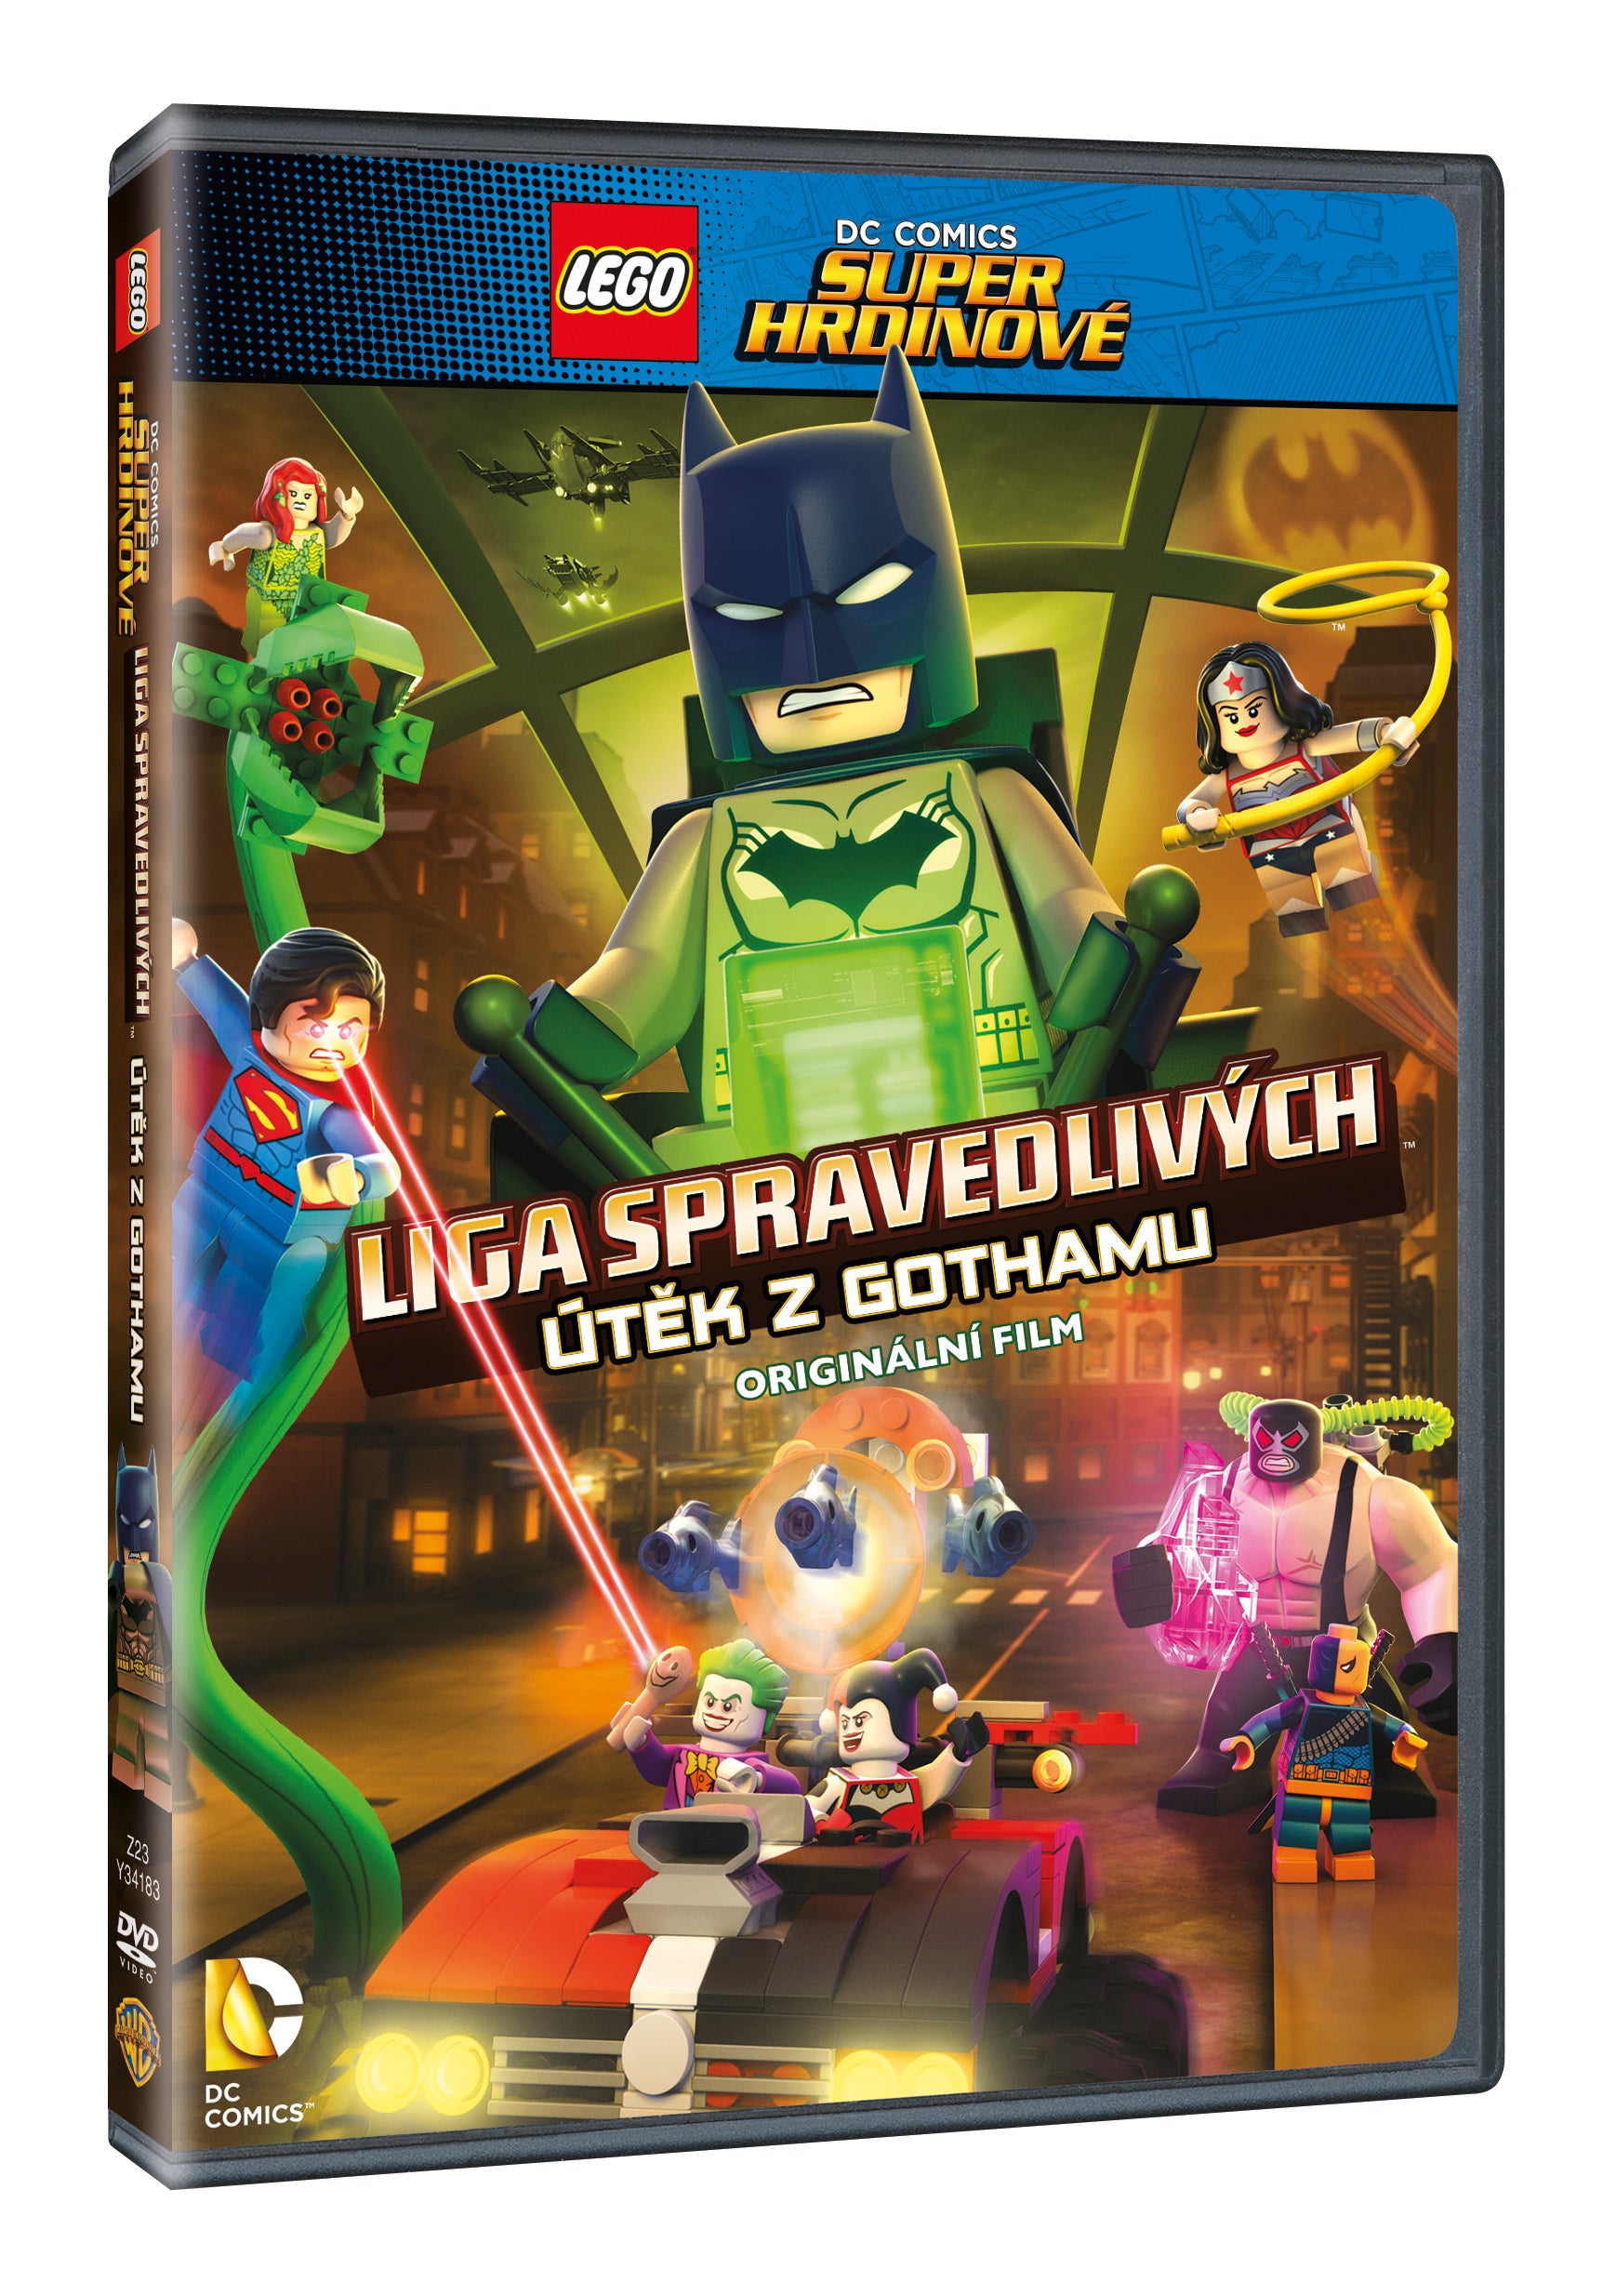 Lego DC Super hrdinove: Utek z Gothamu DVD / LEGO: DC Gotham Breakout